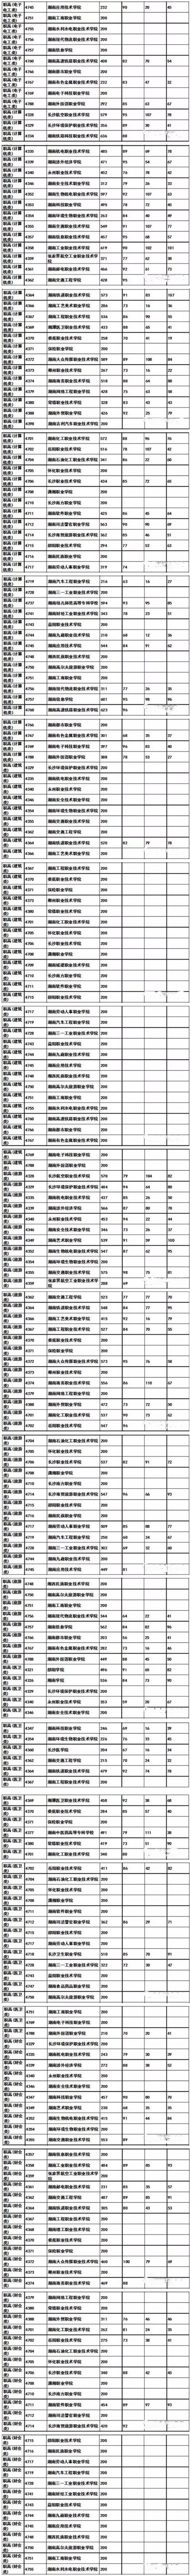 2019年湖南省高职专科批志愿职高对口类投档分数线2.jpg